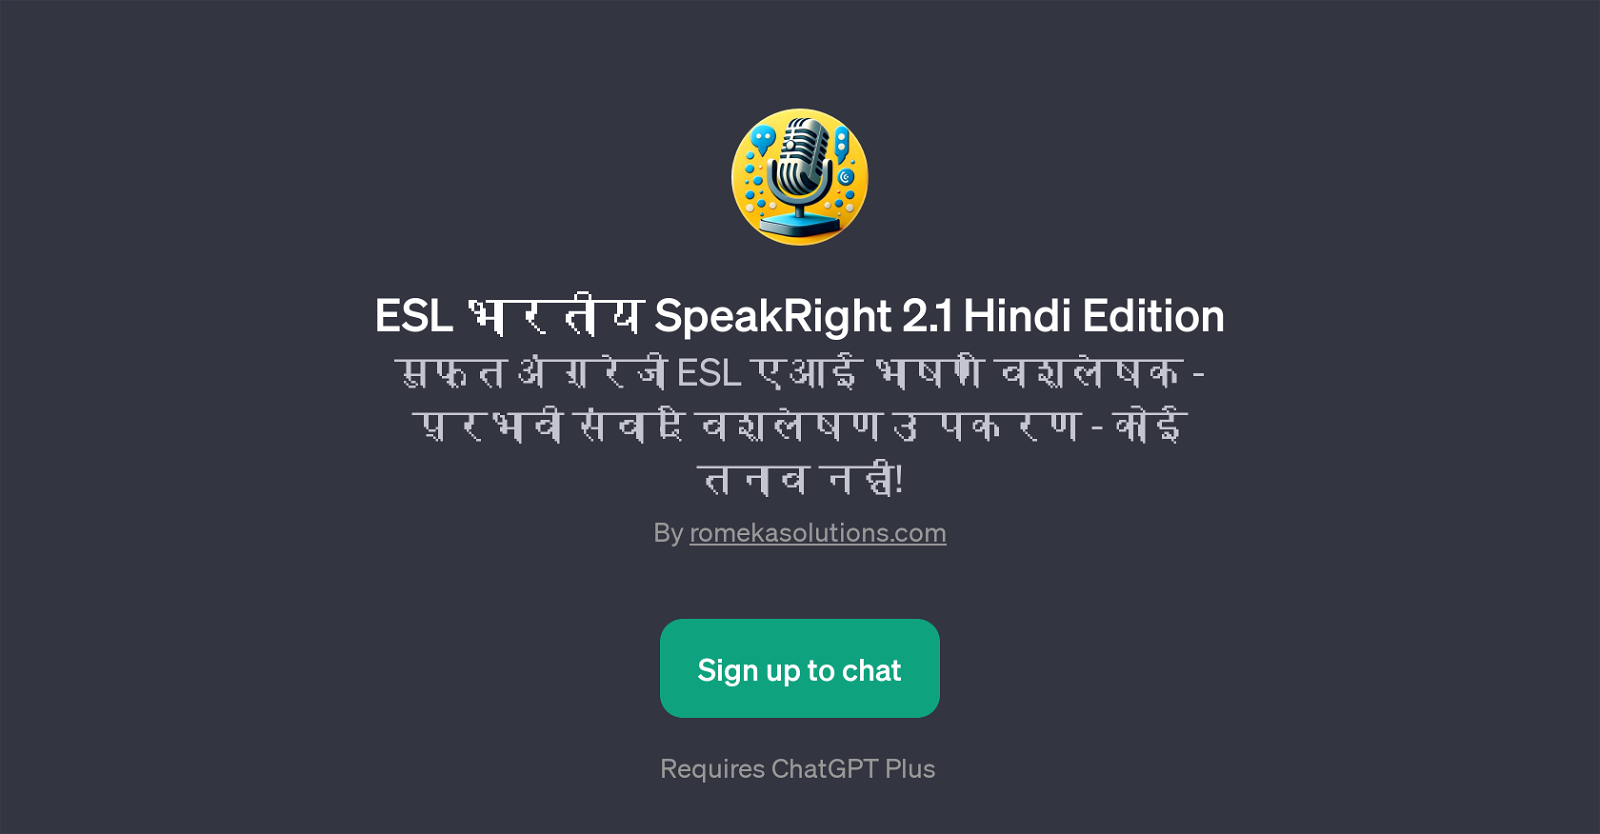 ESL  SpeakRight 2.1 Hindi Edition website